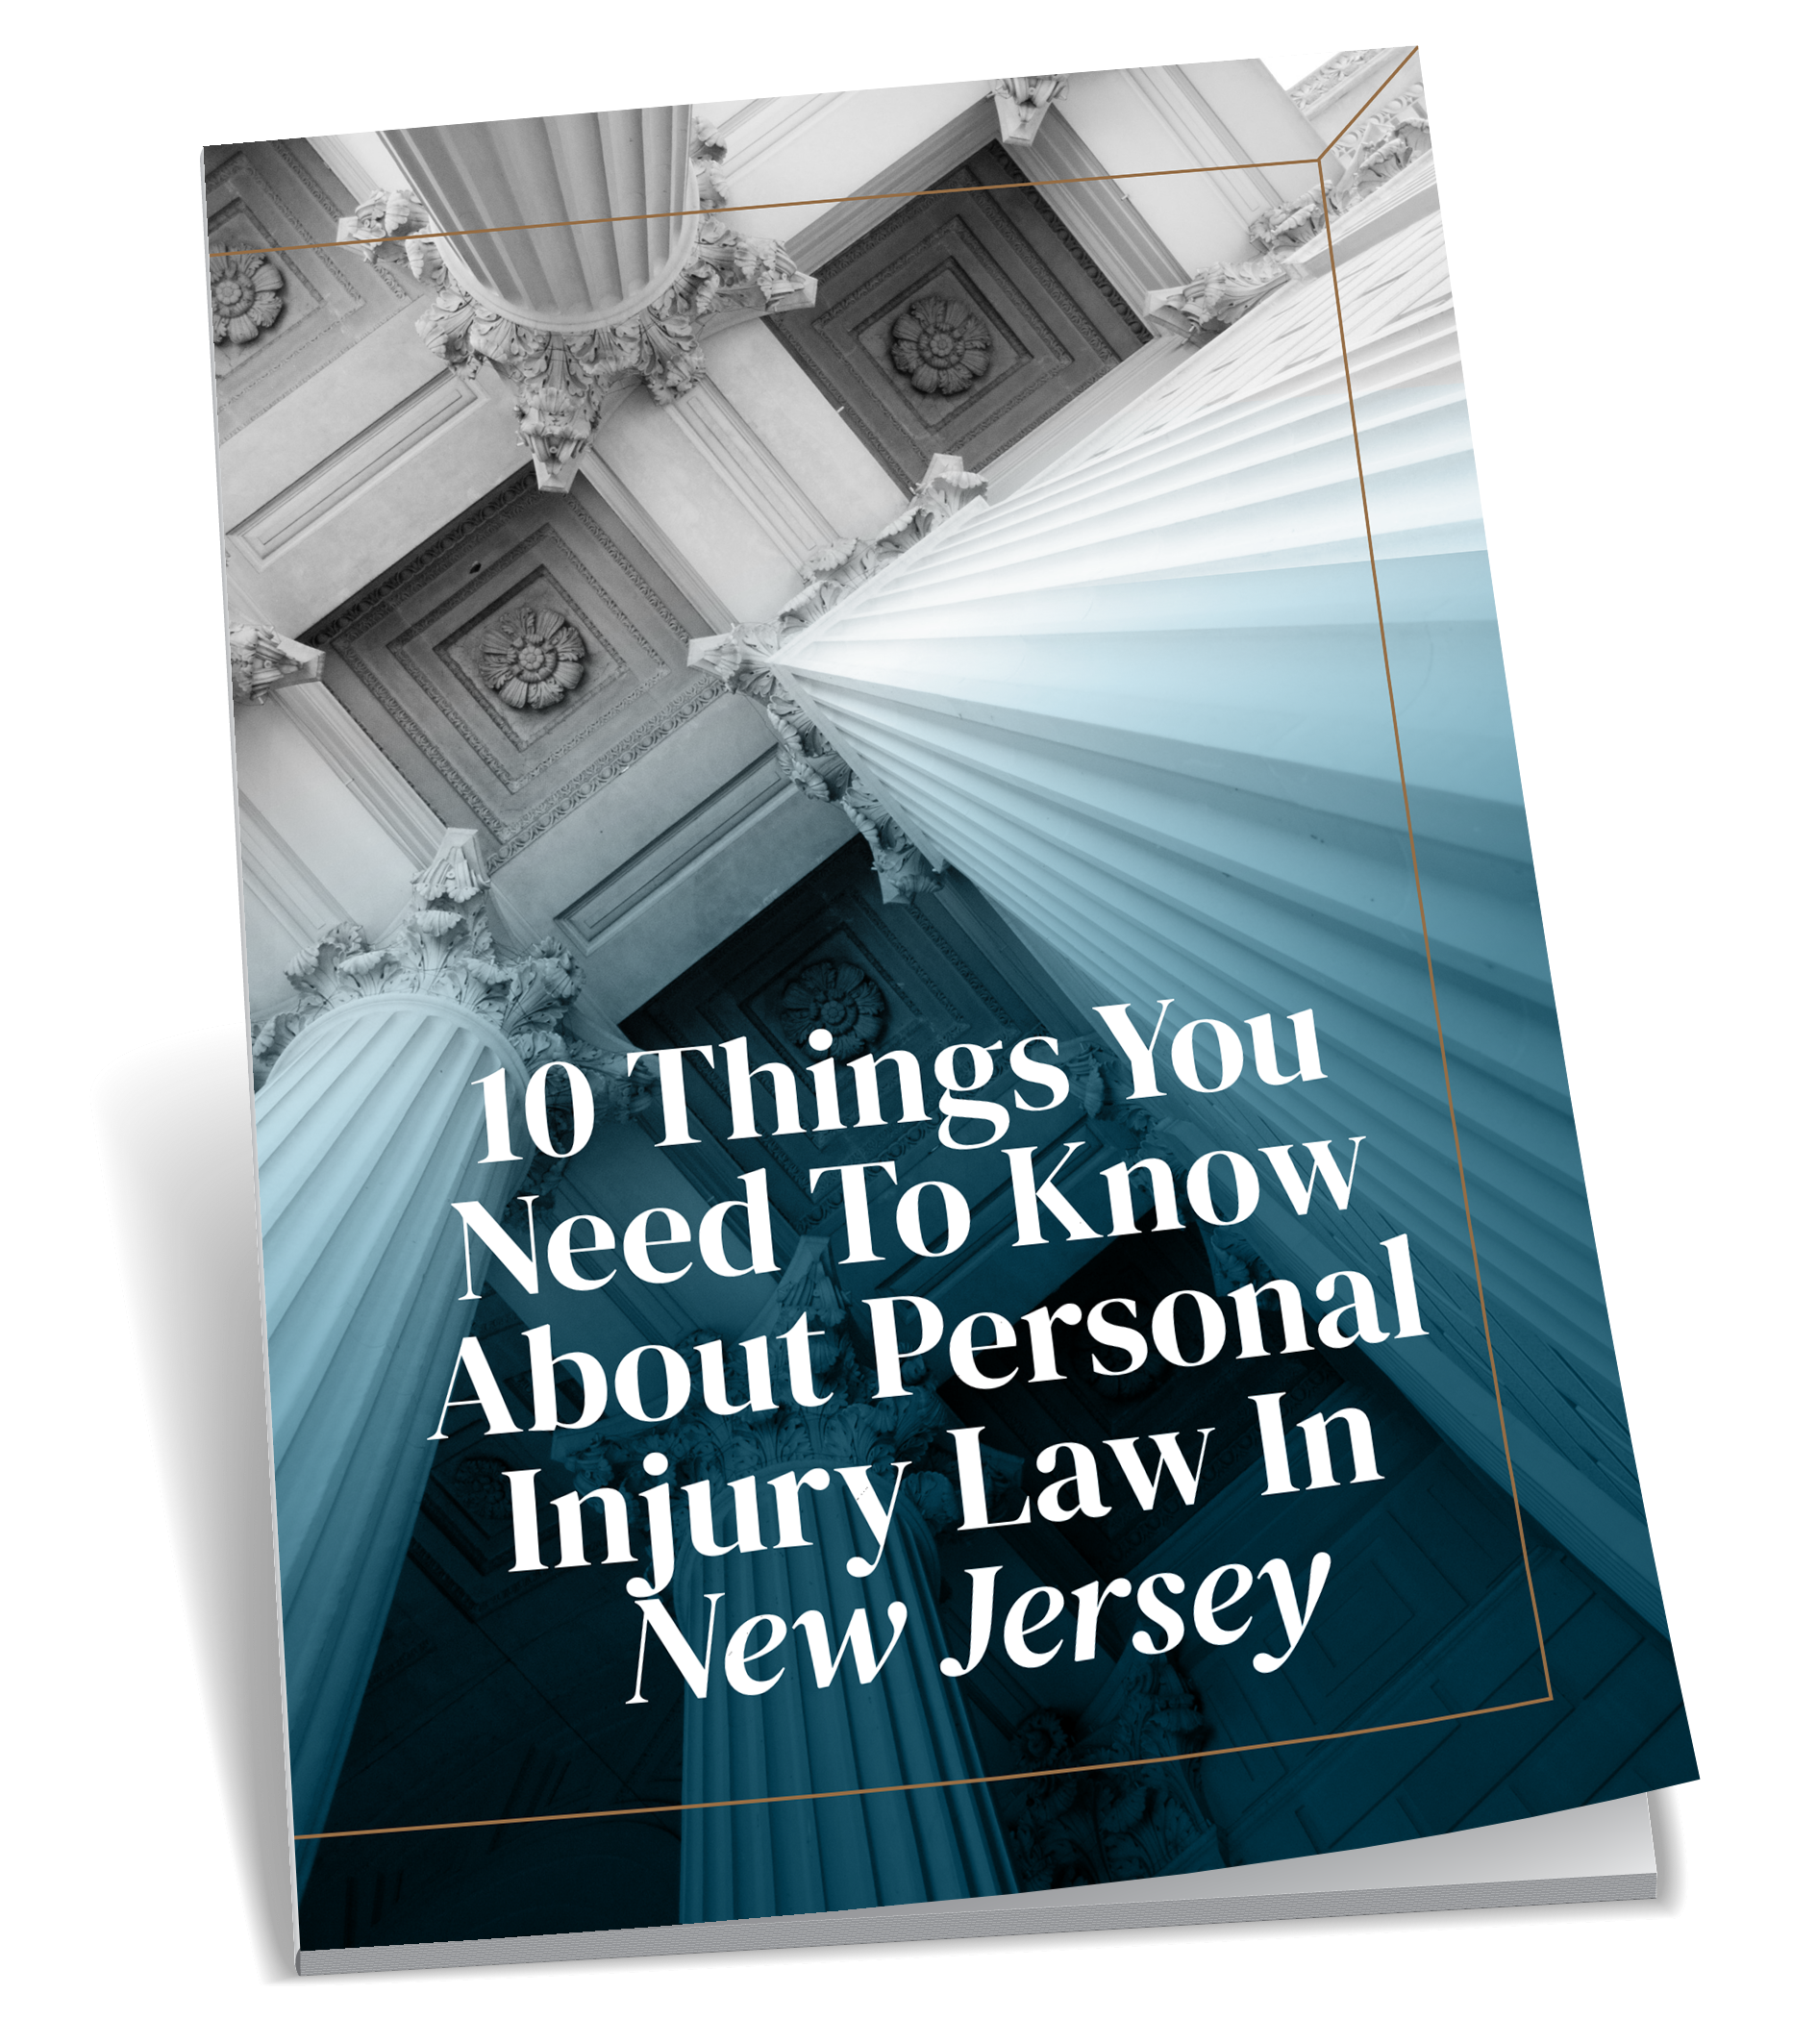 Descargue lo que necesita saber sobre la ley de lesiones personales de Nueva Jersey